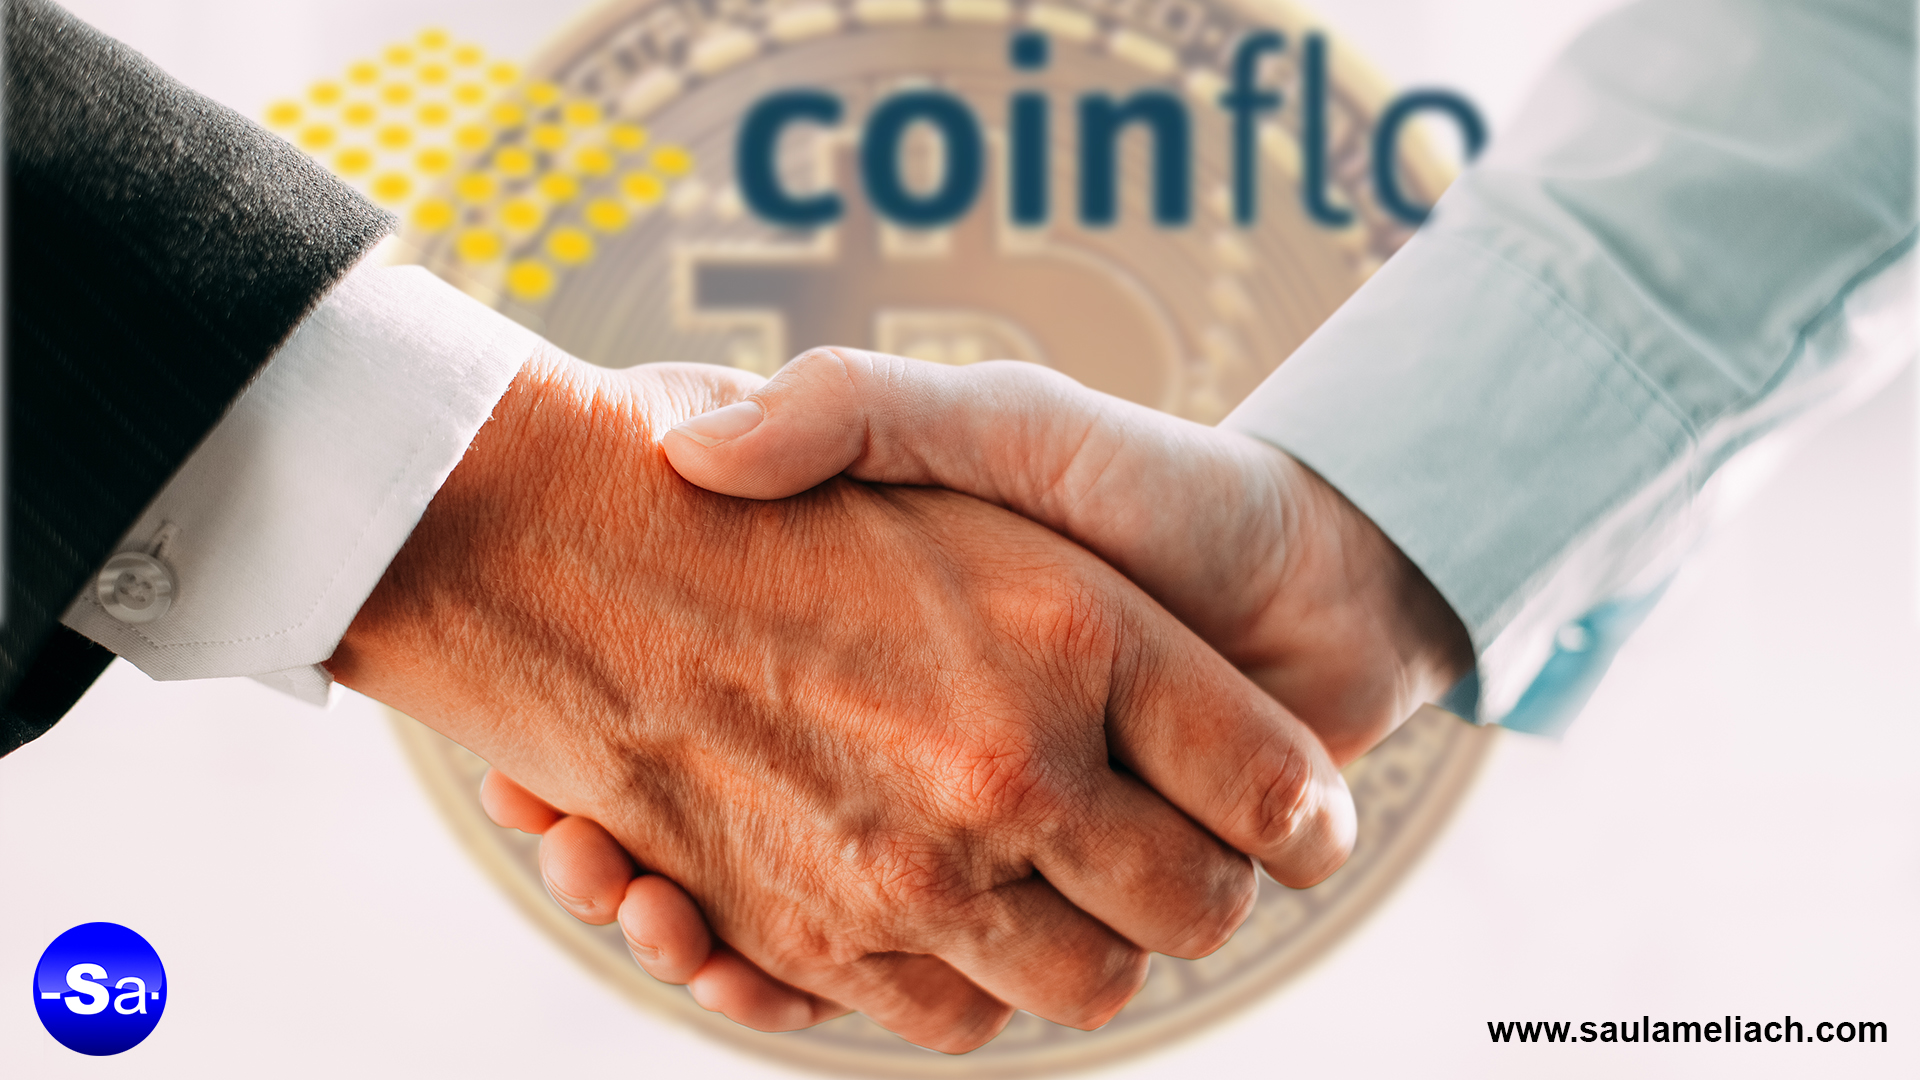 Casa de cambio británica CoinfloorEX ofrecerá contratos futuros de Bitcoin